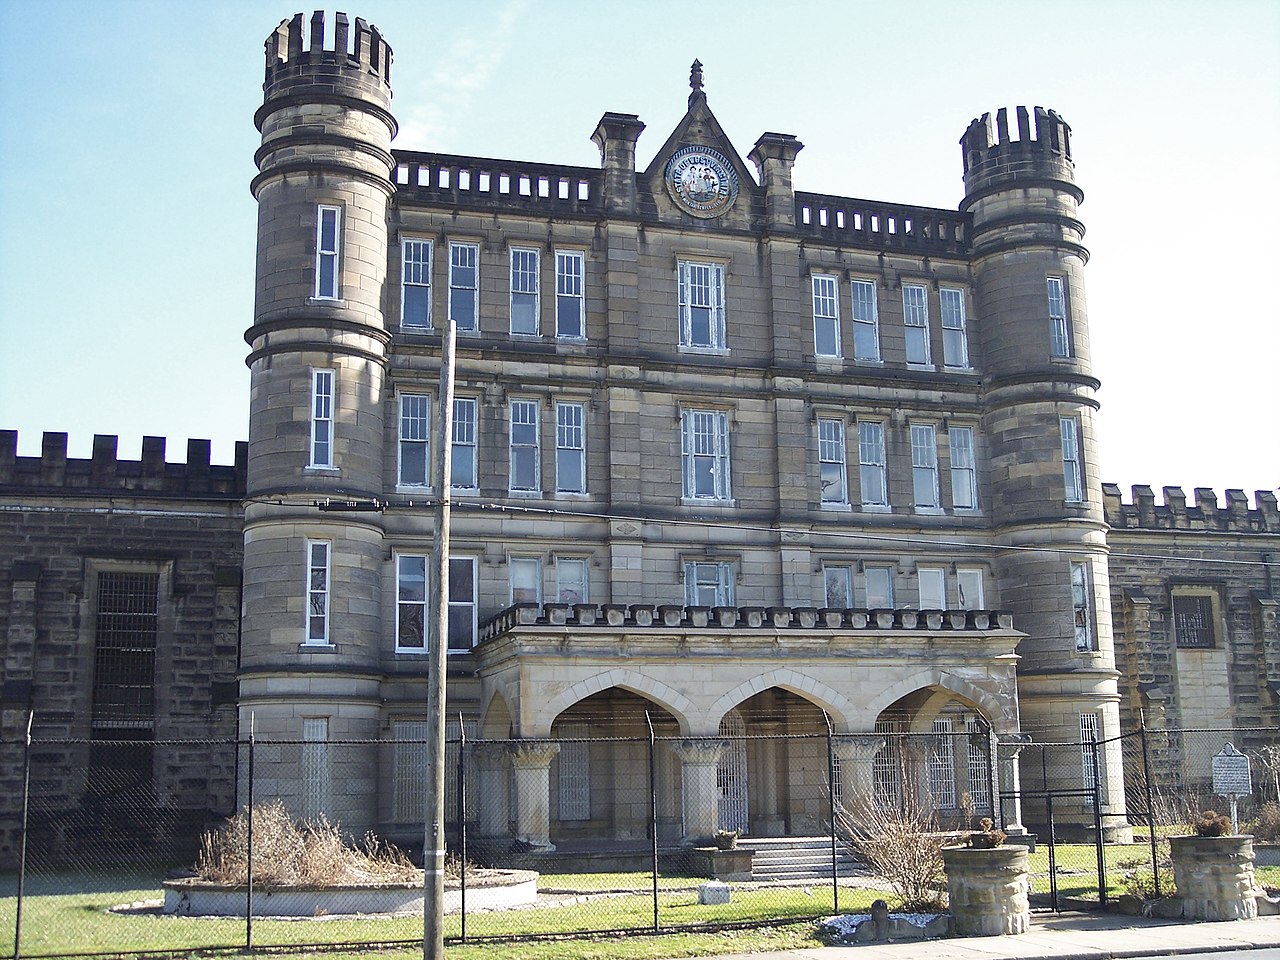 Penitenciária do Estado da Virgínia Ocidental, um exemplo do renascimento gótico nos Estados Unidos